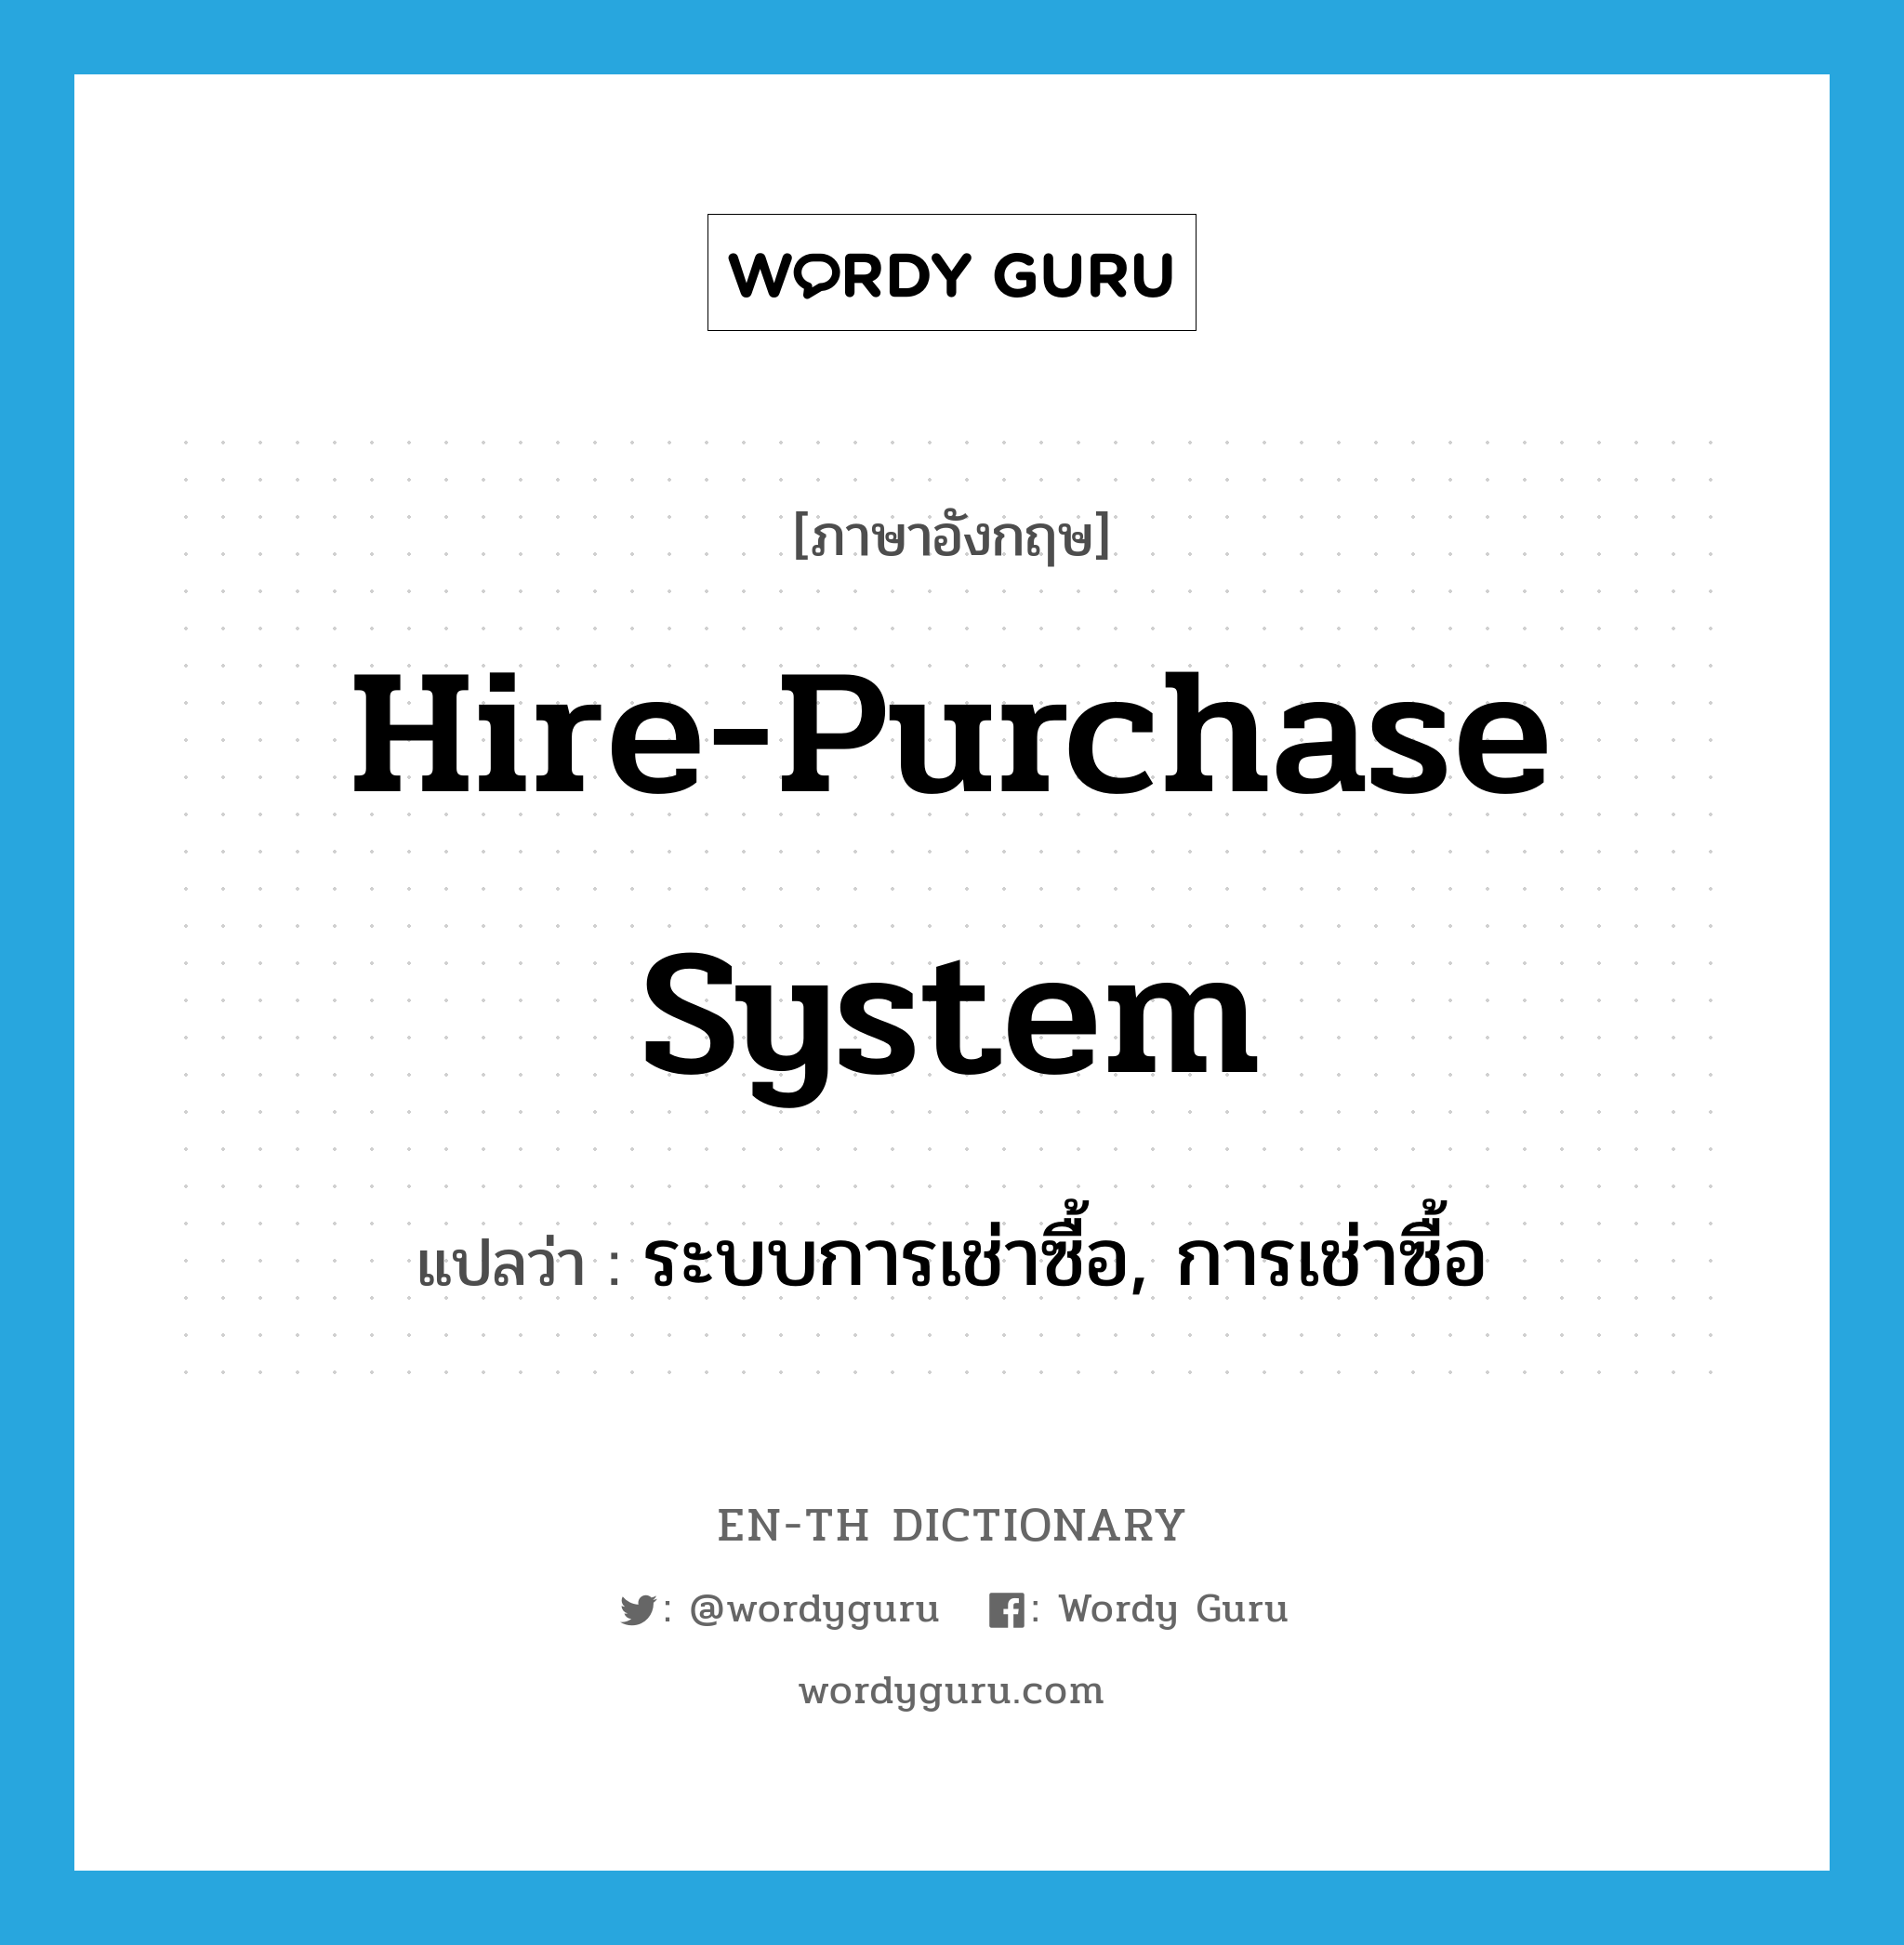 ระบบการเช่าซื้อ, การเช่าซื้อ ภาษาอังกฤษ?, คำศัพท์ภาษาอังกฤษ ระบบการเช่าซื้อ, การเช่าซื้อ แปลว่า hire-purchase system ประเภท N หมวด N